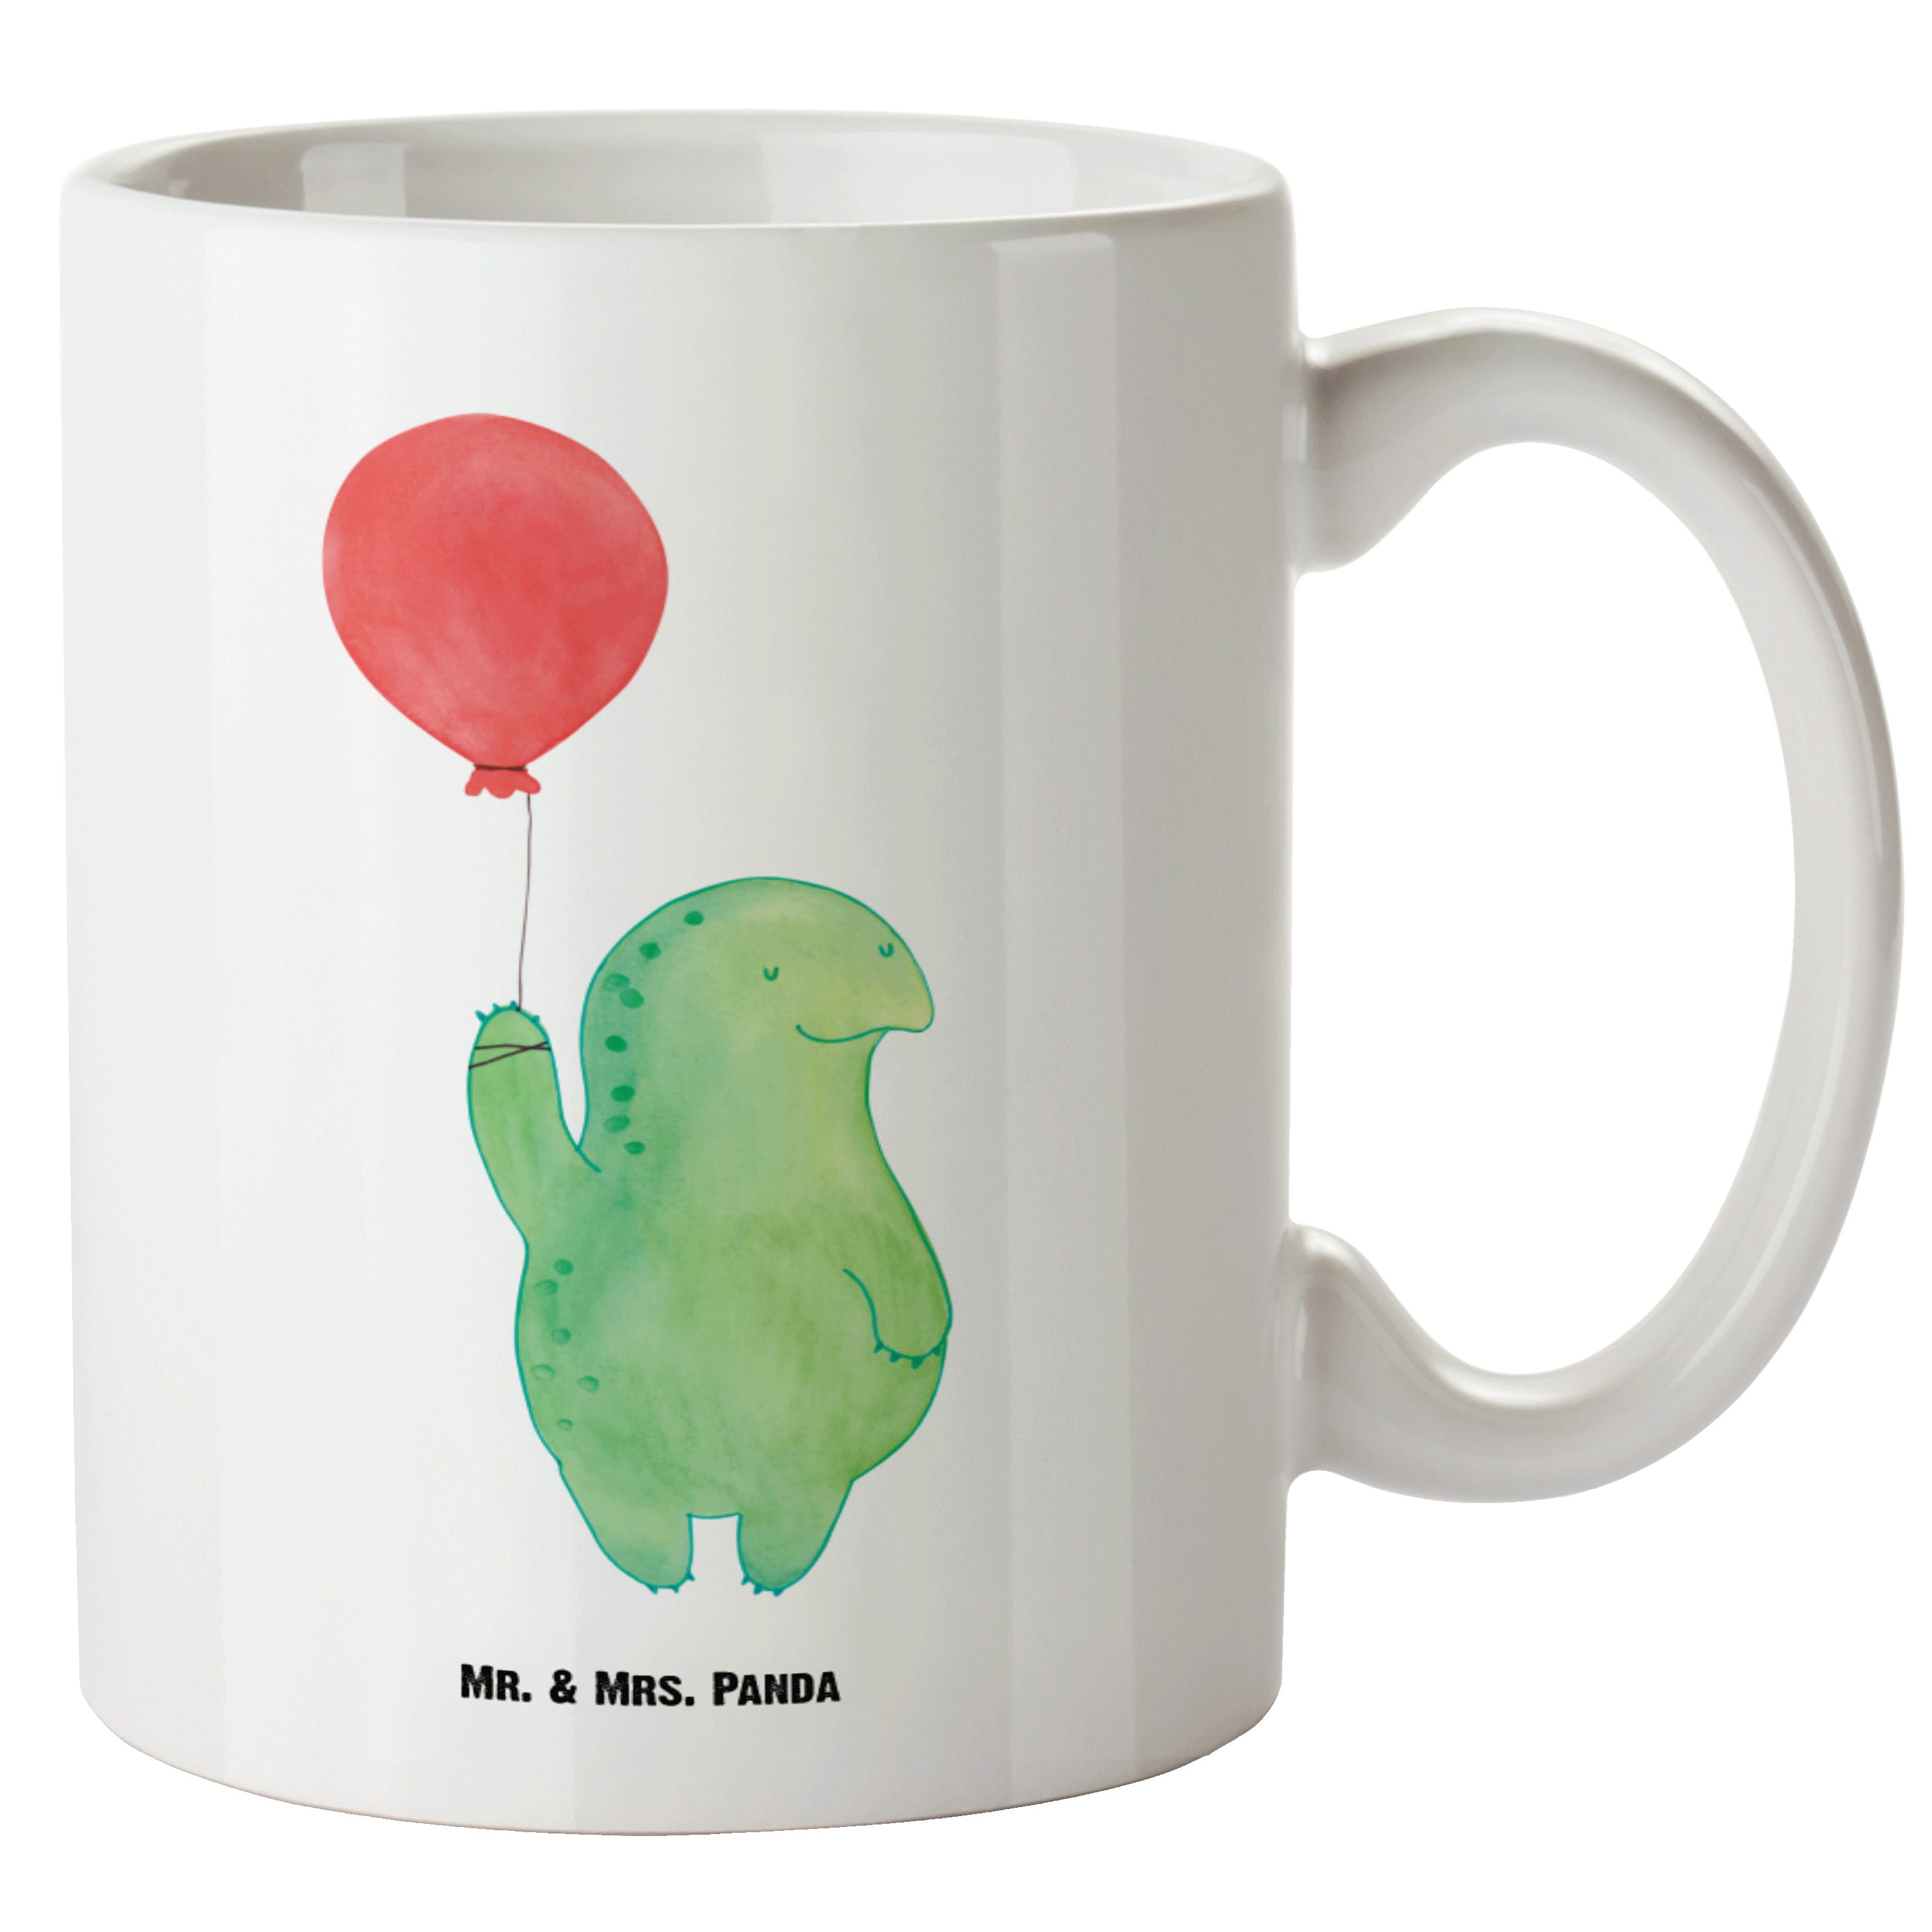 Mr. & Mrs. Panda Tasse Schildkröte Luftballon - Weiß - Geschenk, XL Tasse, glücklich, Motiva, XL Tasse Keramik